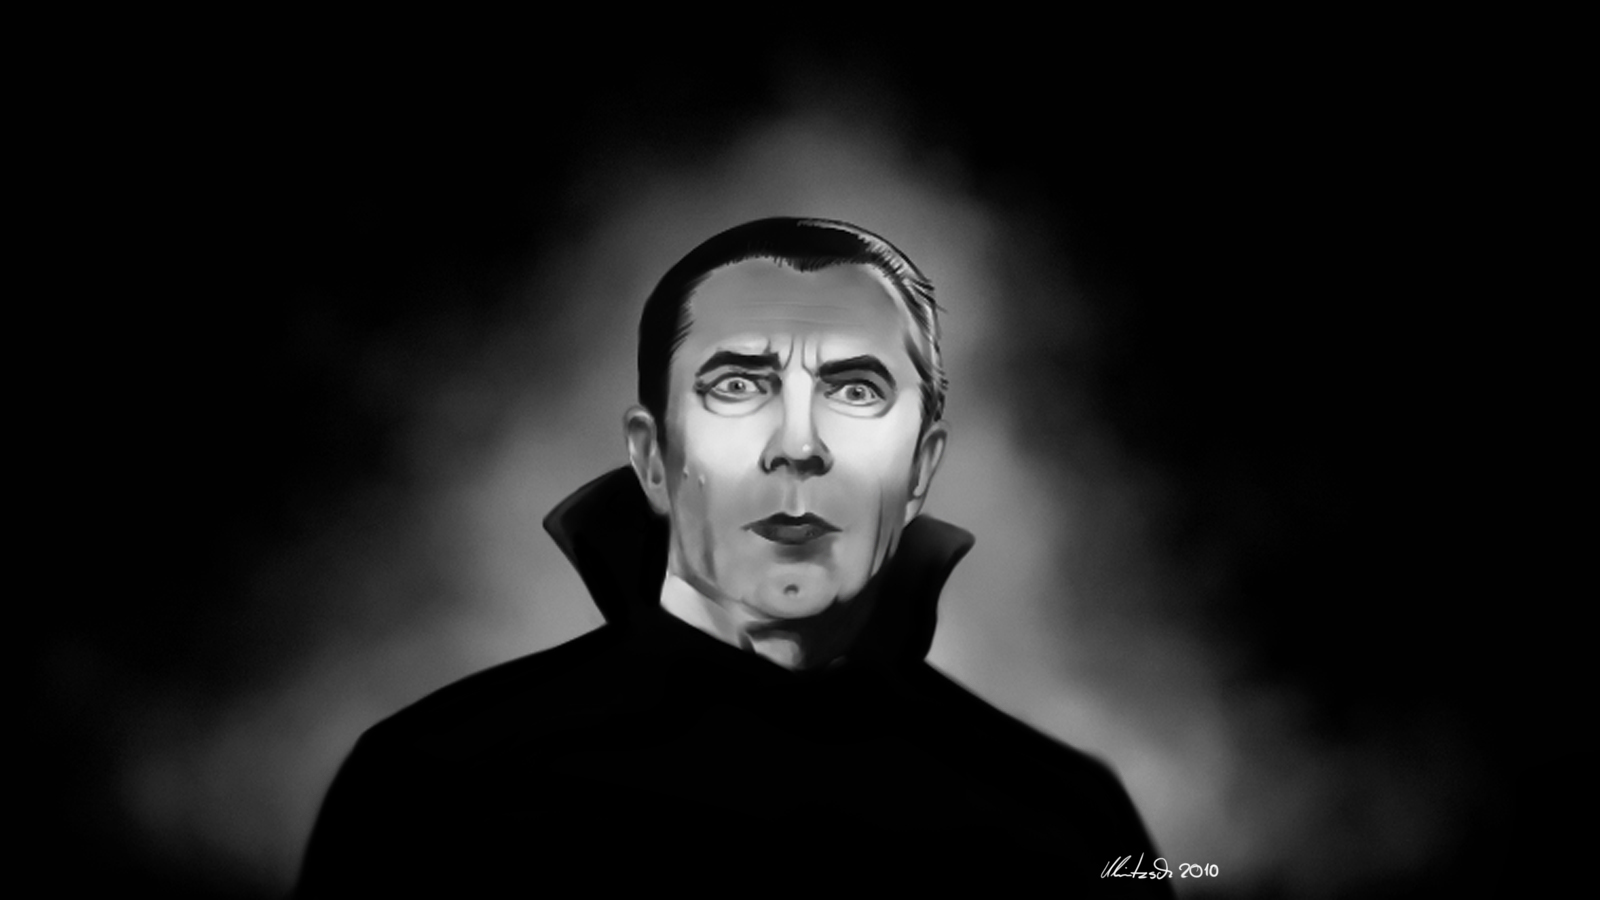 Designs And More Bela Lugosi Dracula Wallpaper